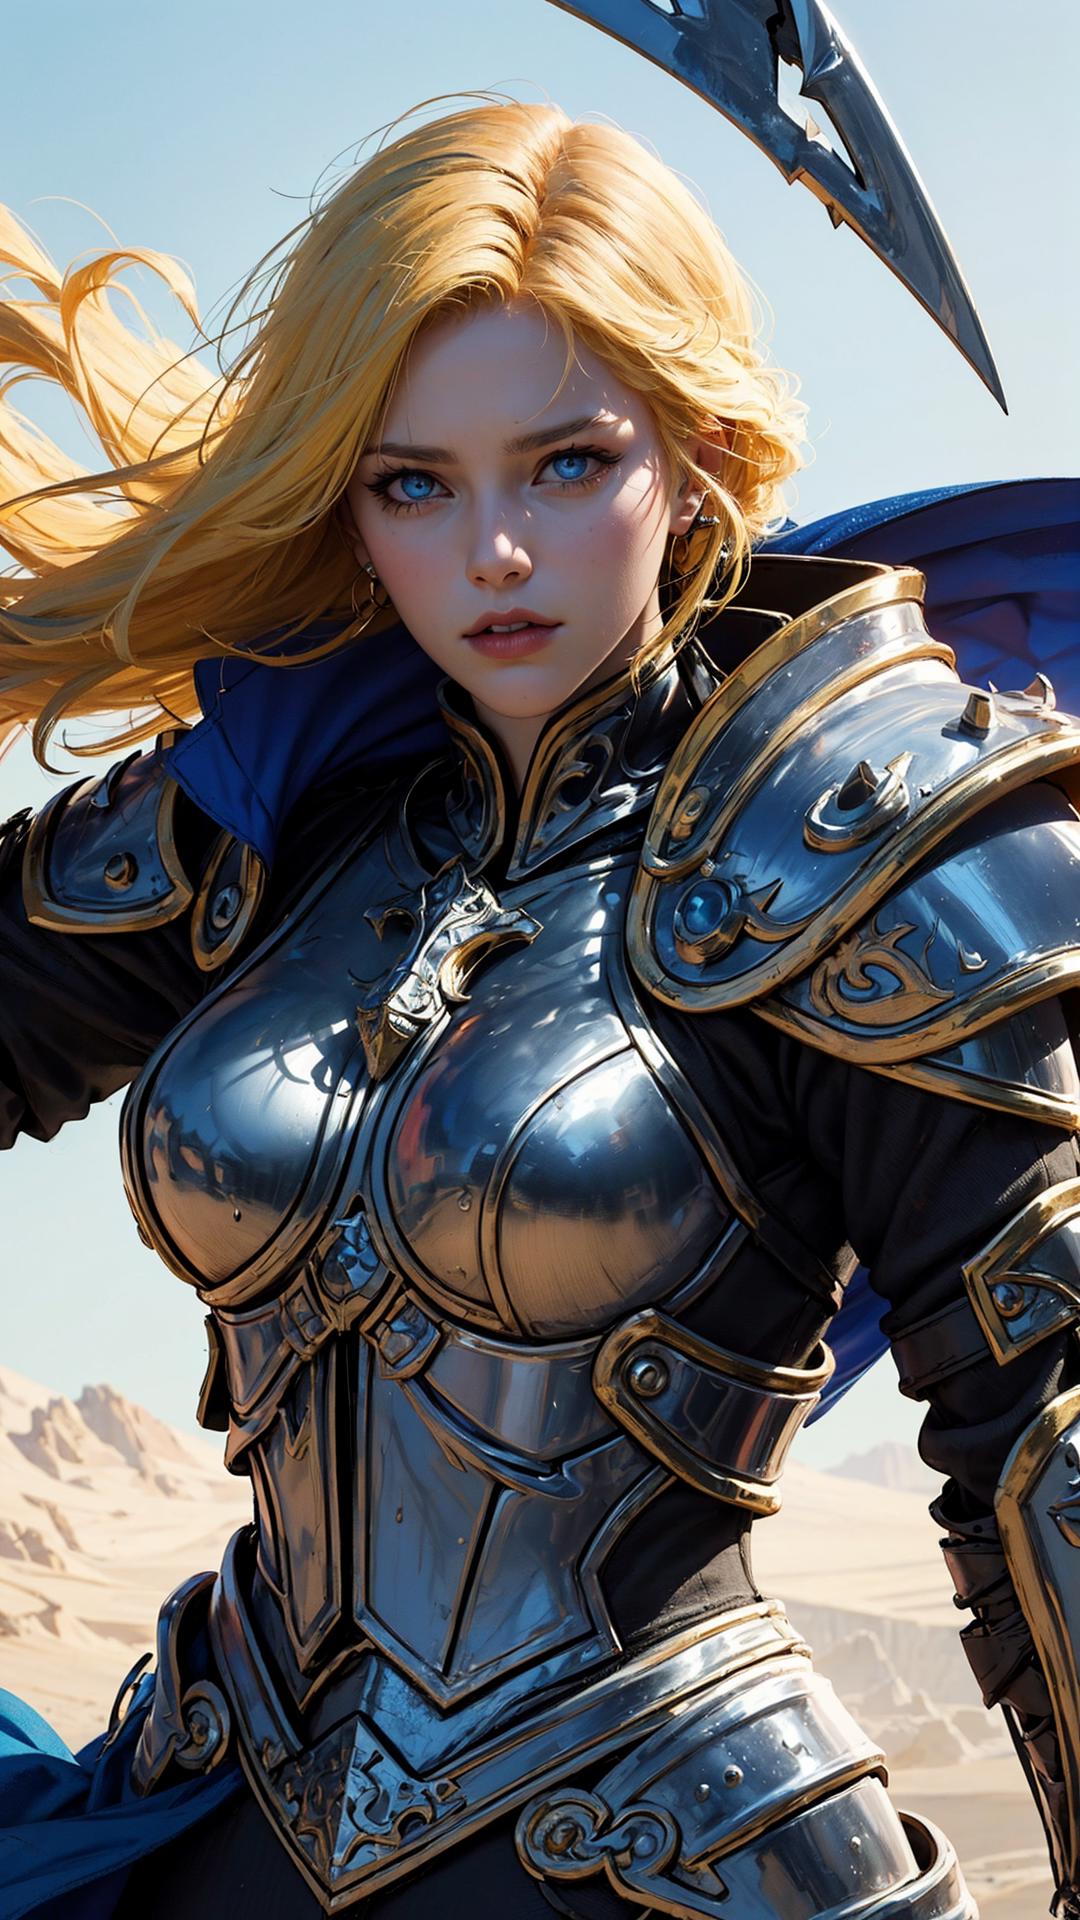 SXZ Death Knights [ Warcraft ] image by katamarion